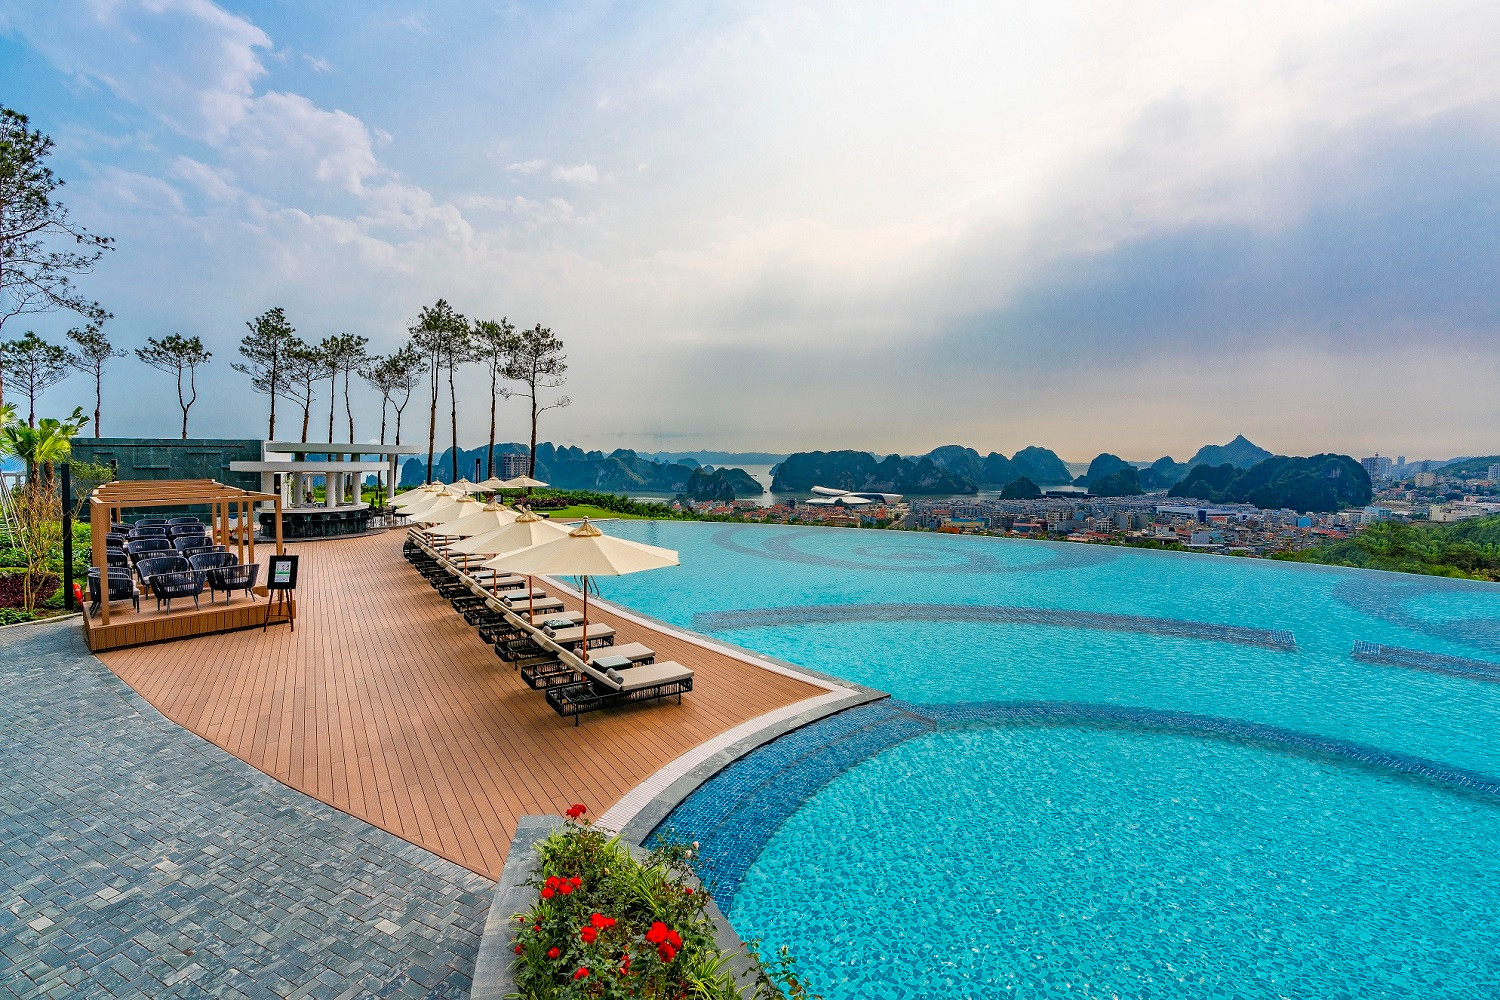 Khai trương Bamboo Airways tower, FLC Hotel & Resorts tung “mưa” voucher nghỉ dưỡng siêu tiết kiệm